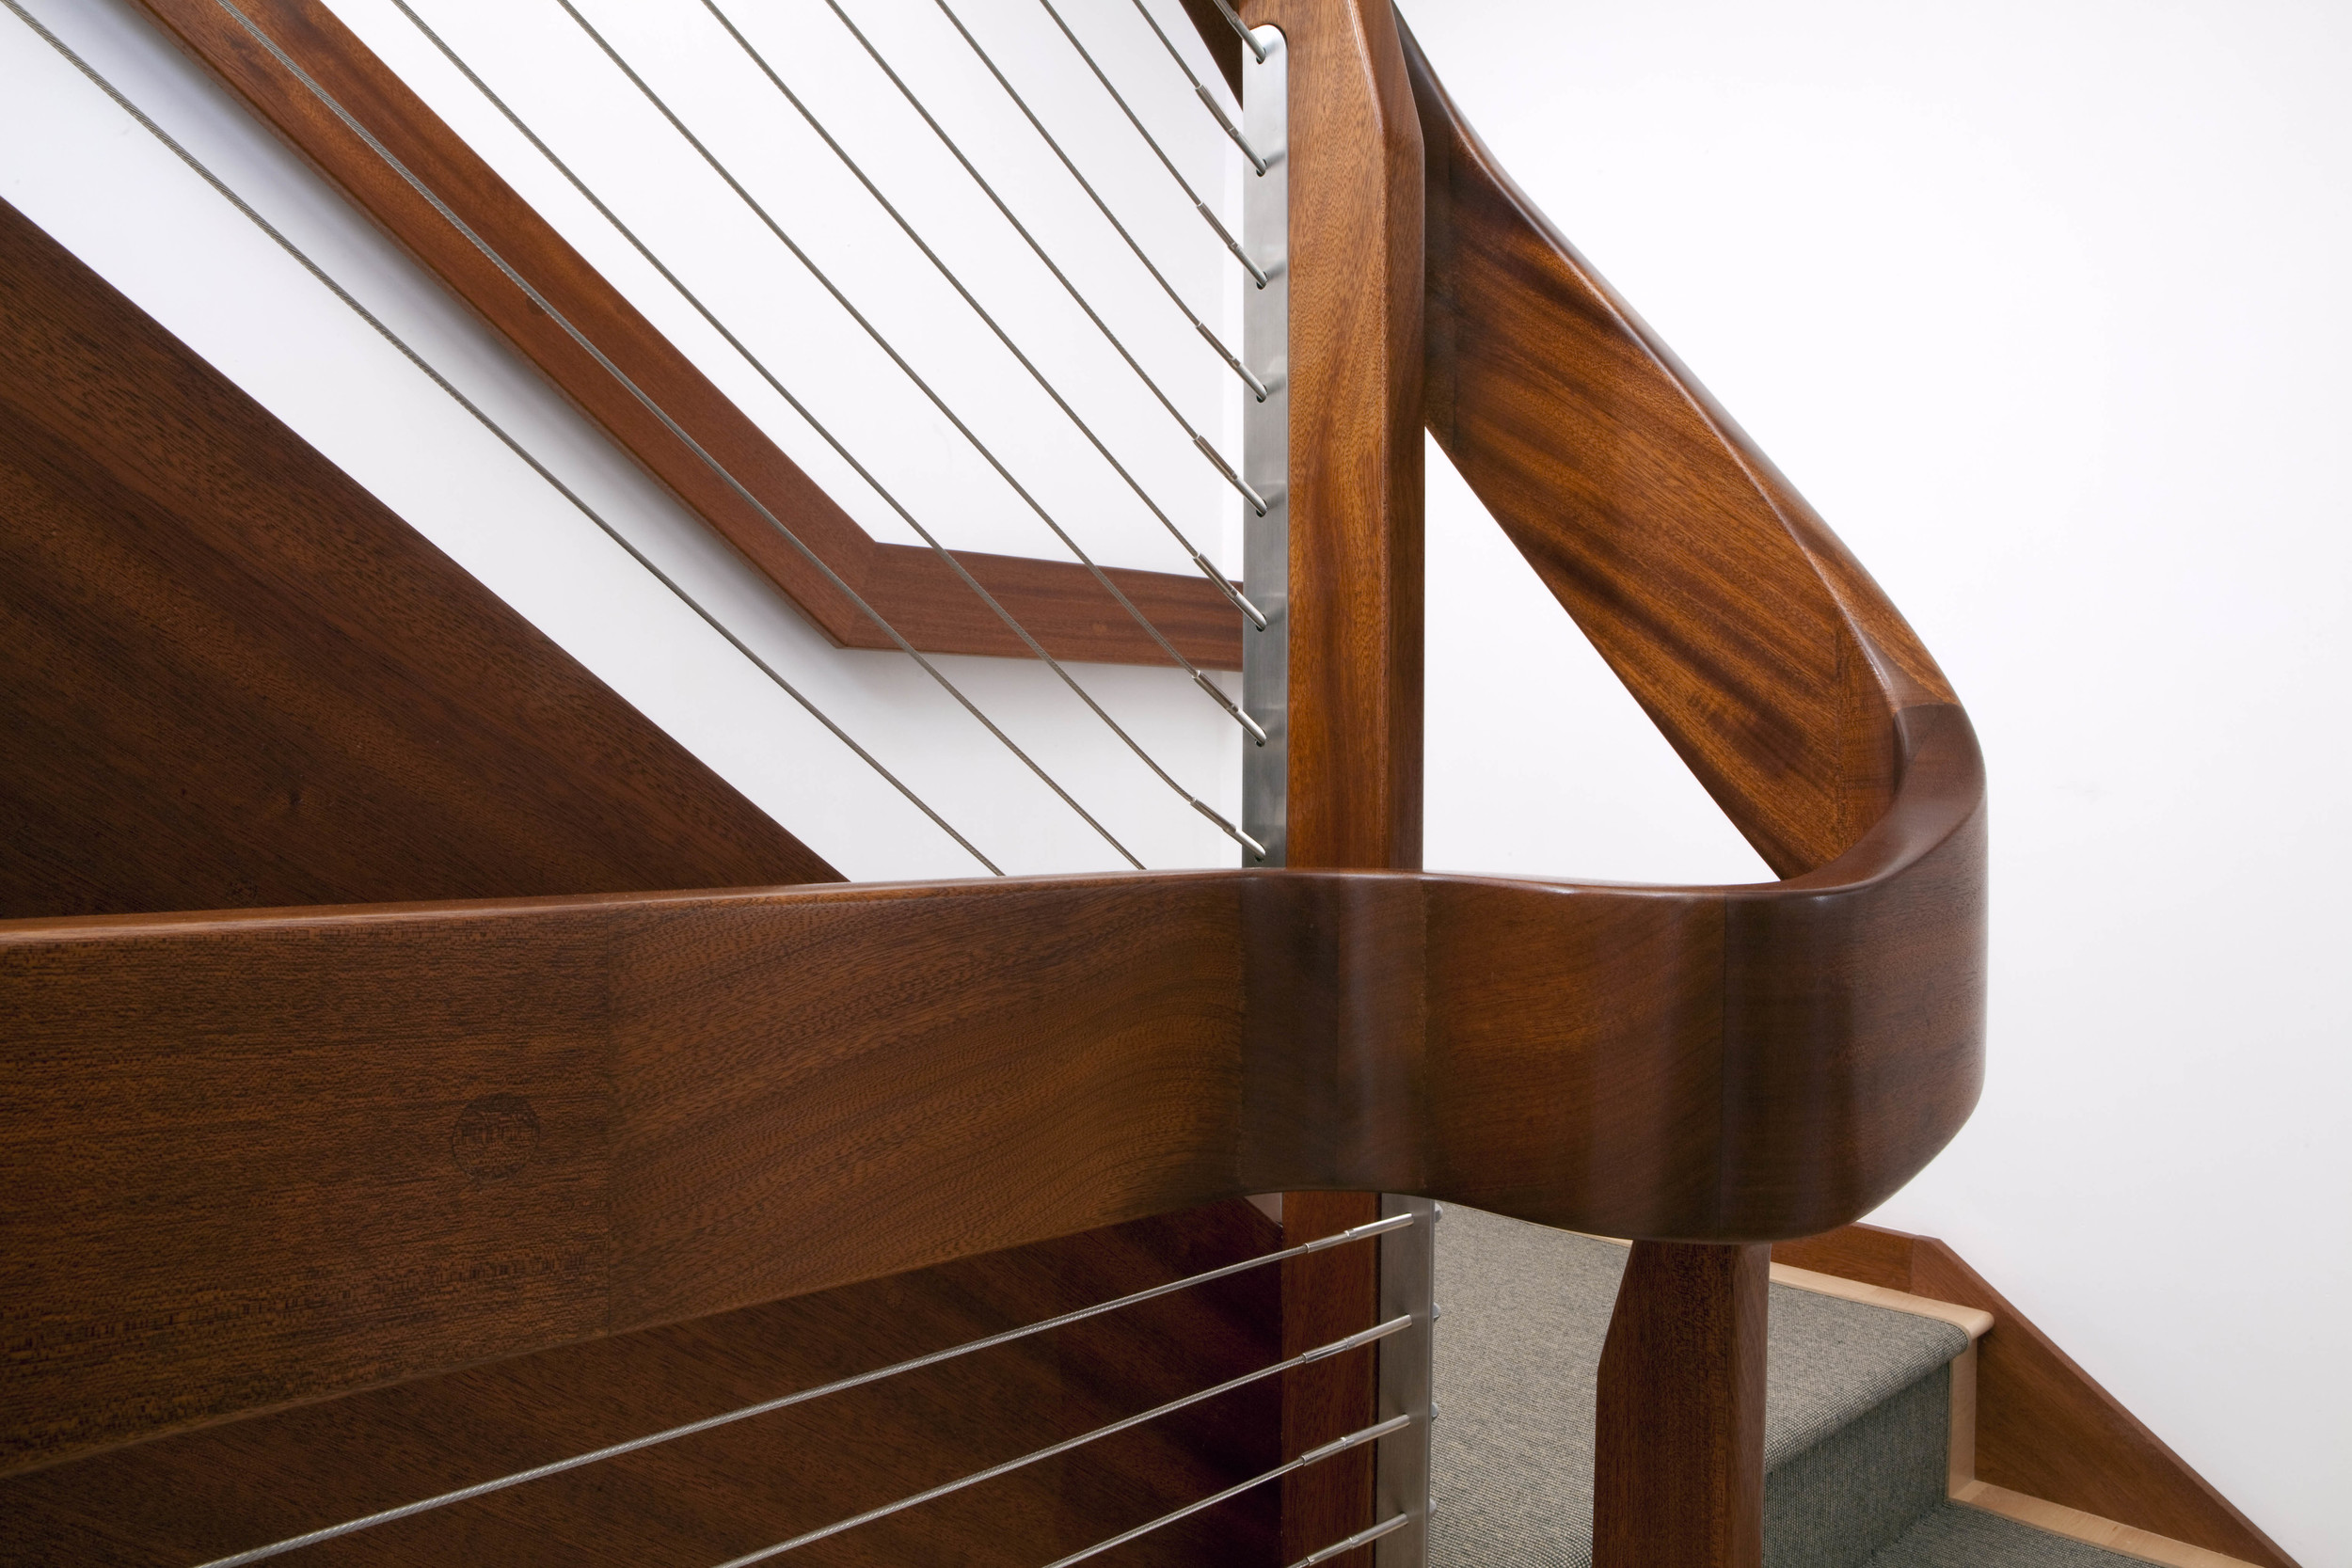  custom handrail detail   